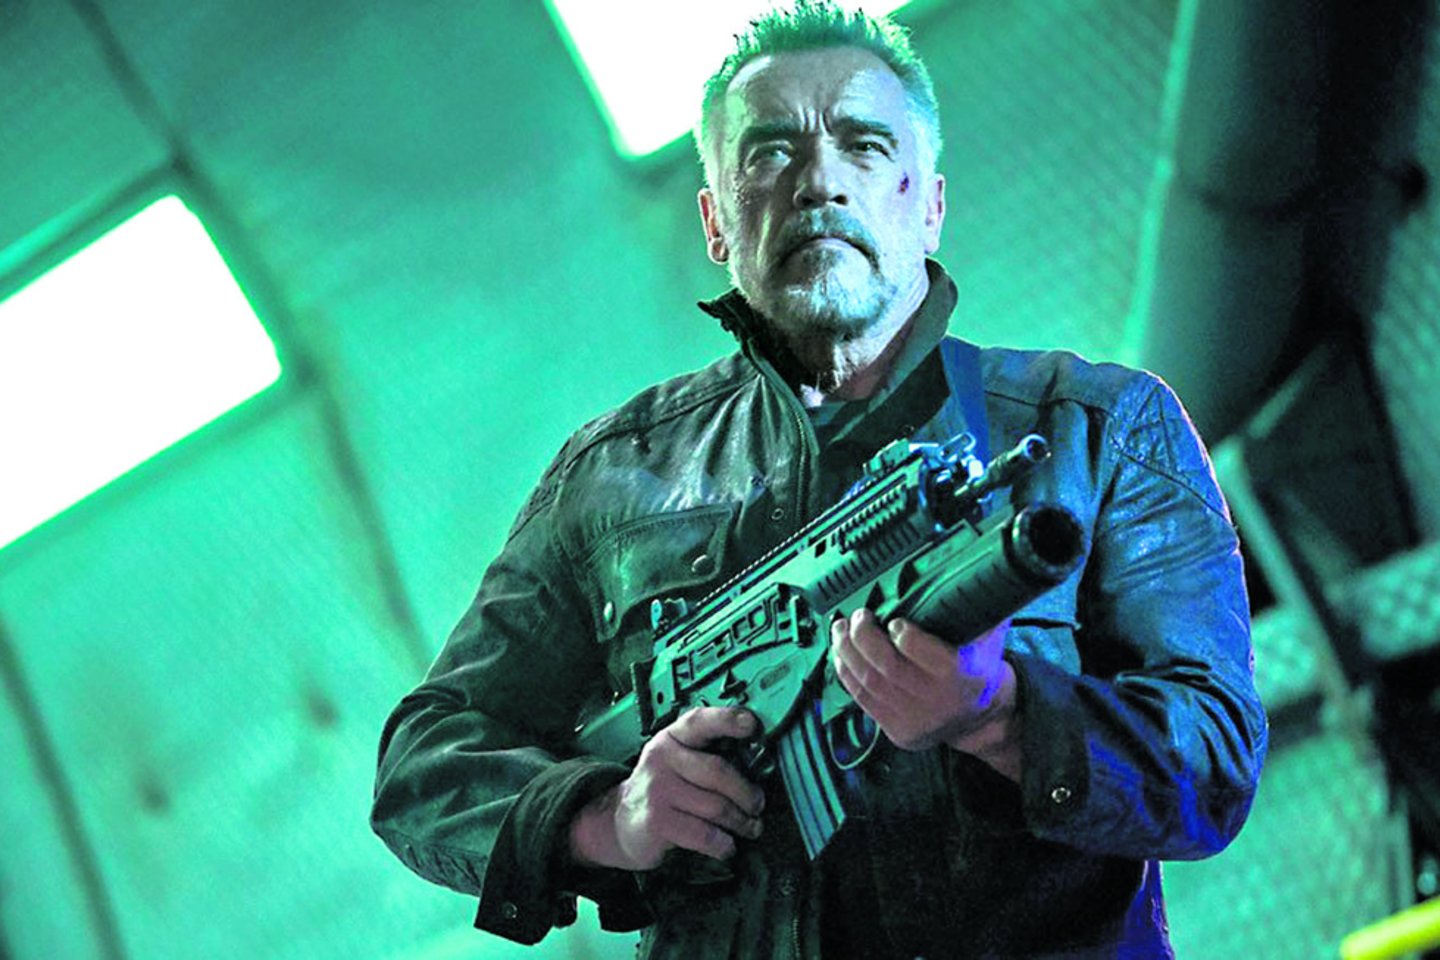 A.Schwarzeneggerį išgarsino Terminatoriaus vaidmuo.<br>imdb.com nuotr.